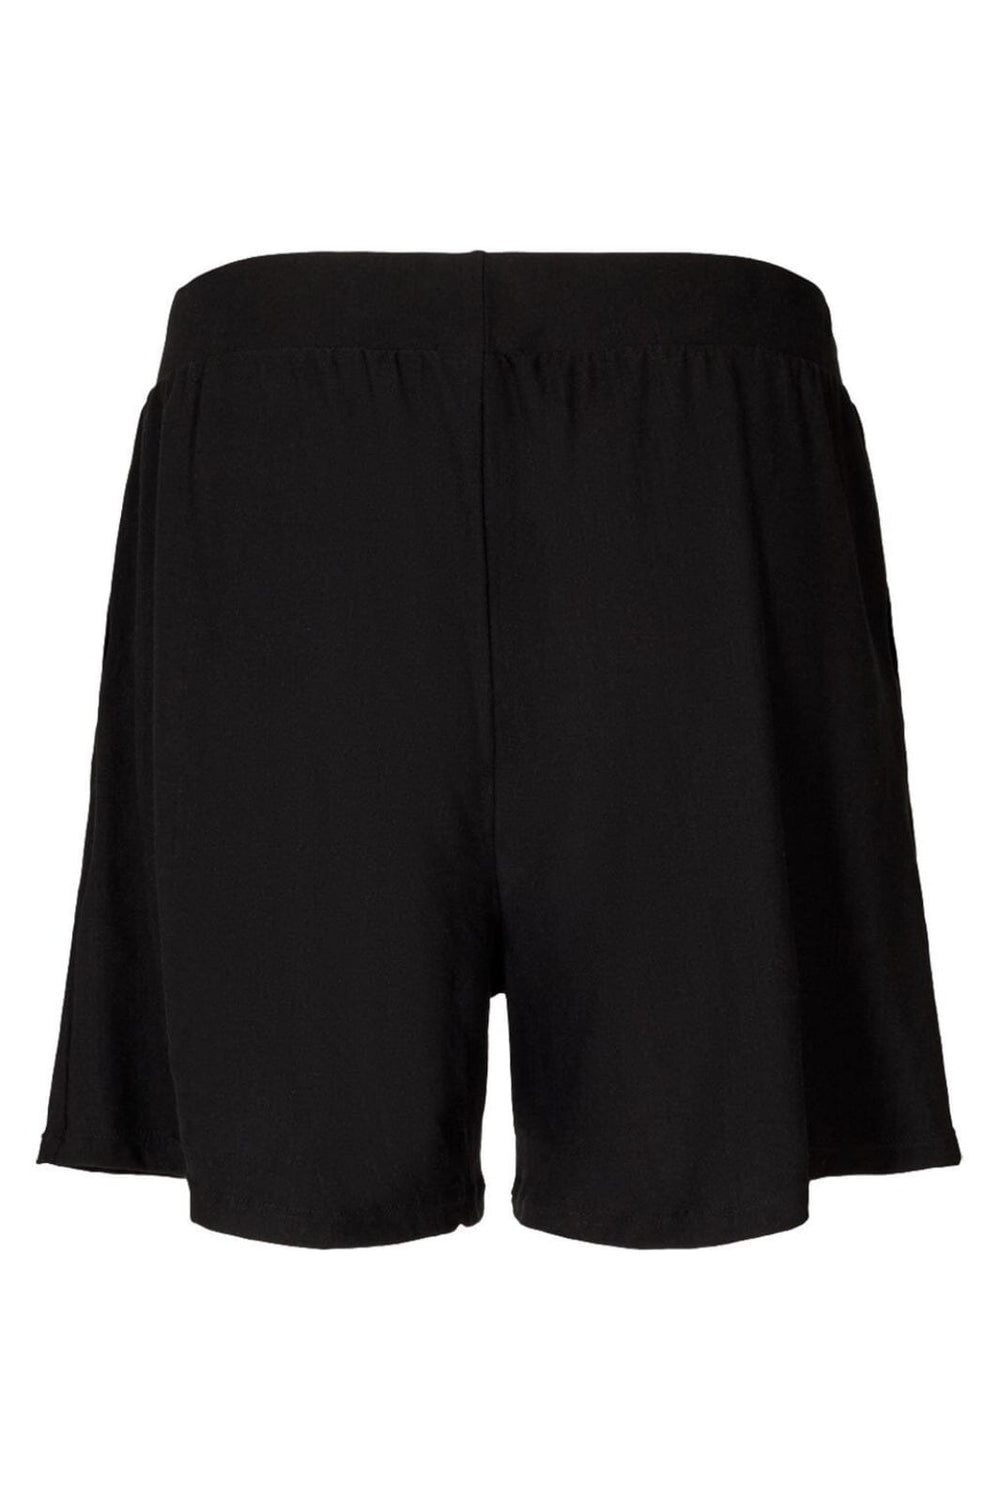 Liberte - Black - Alma shorts Shorts 